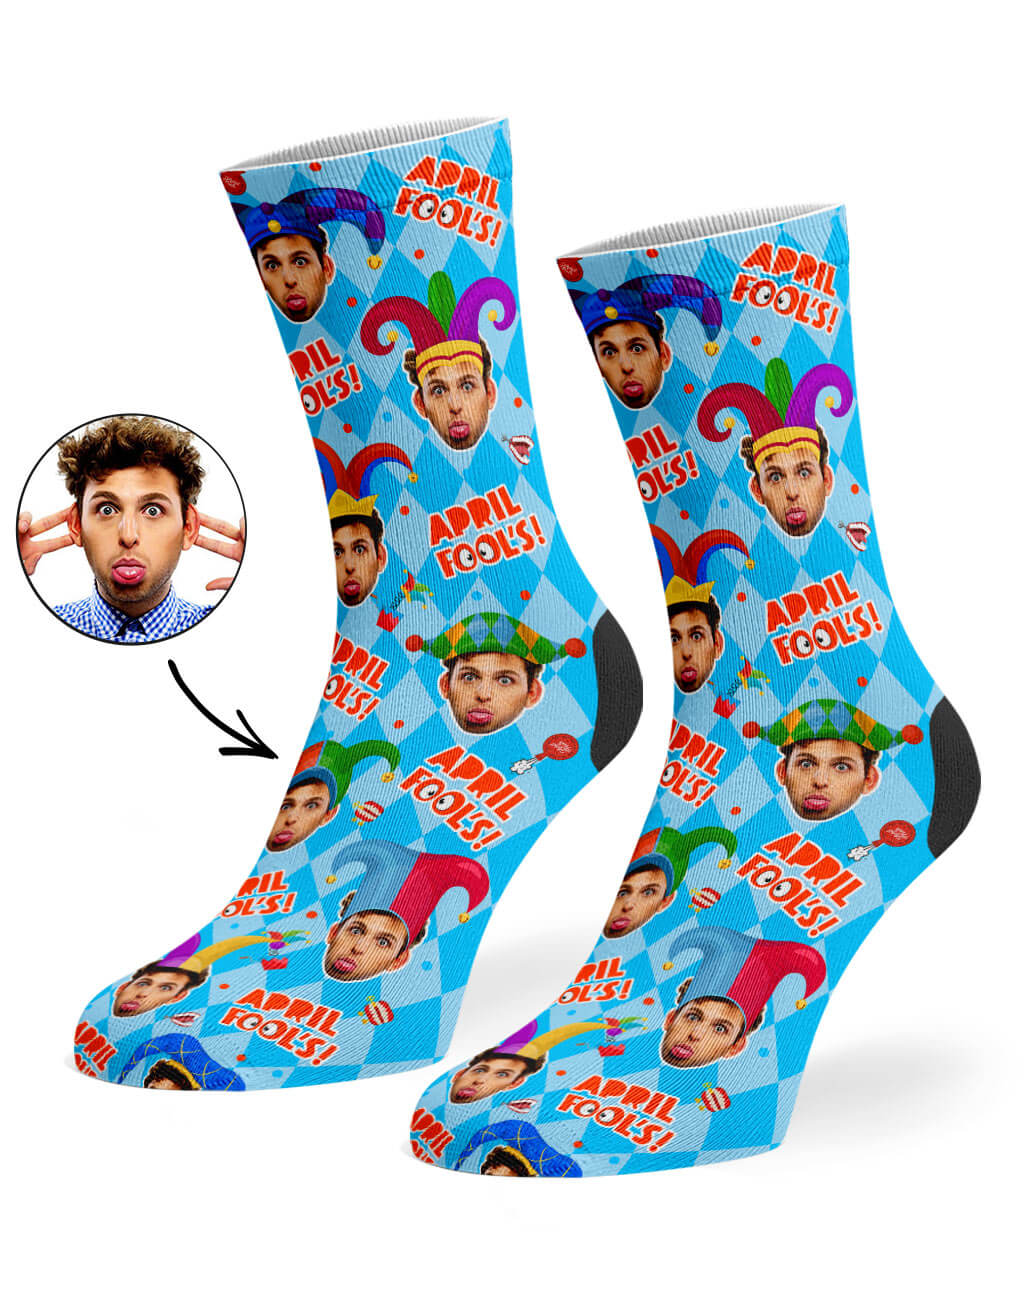 April Fools Custom Socks